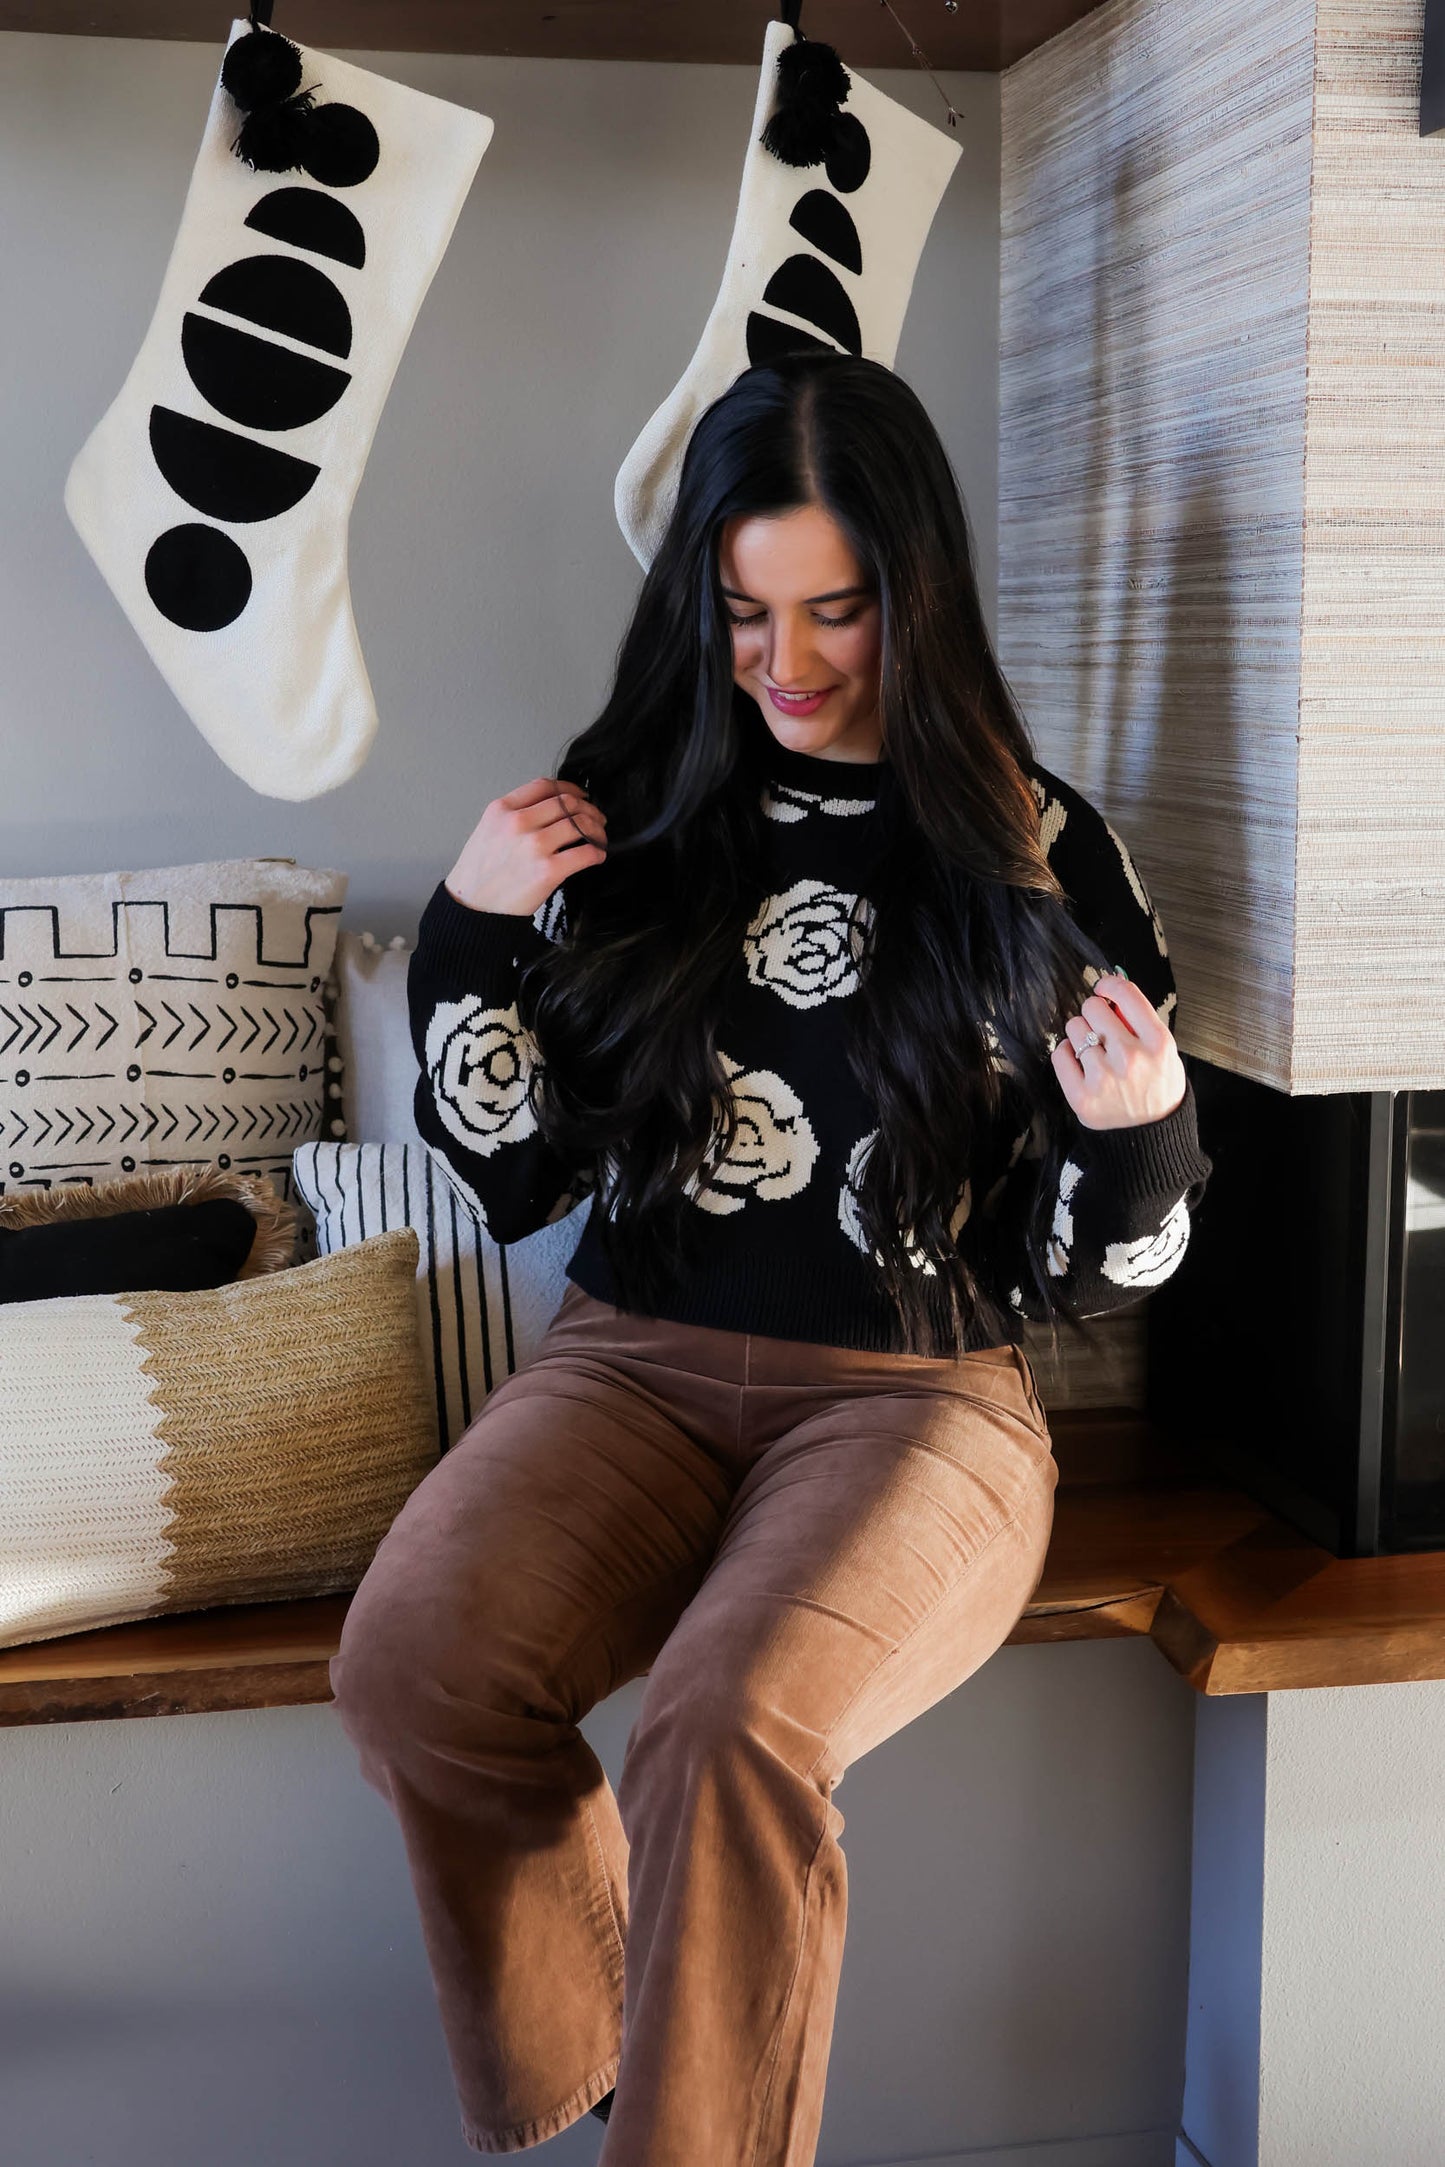 Gia Rose Knit Sweater | Black